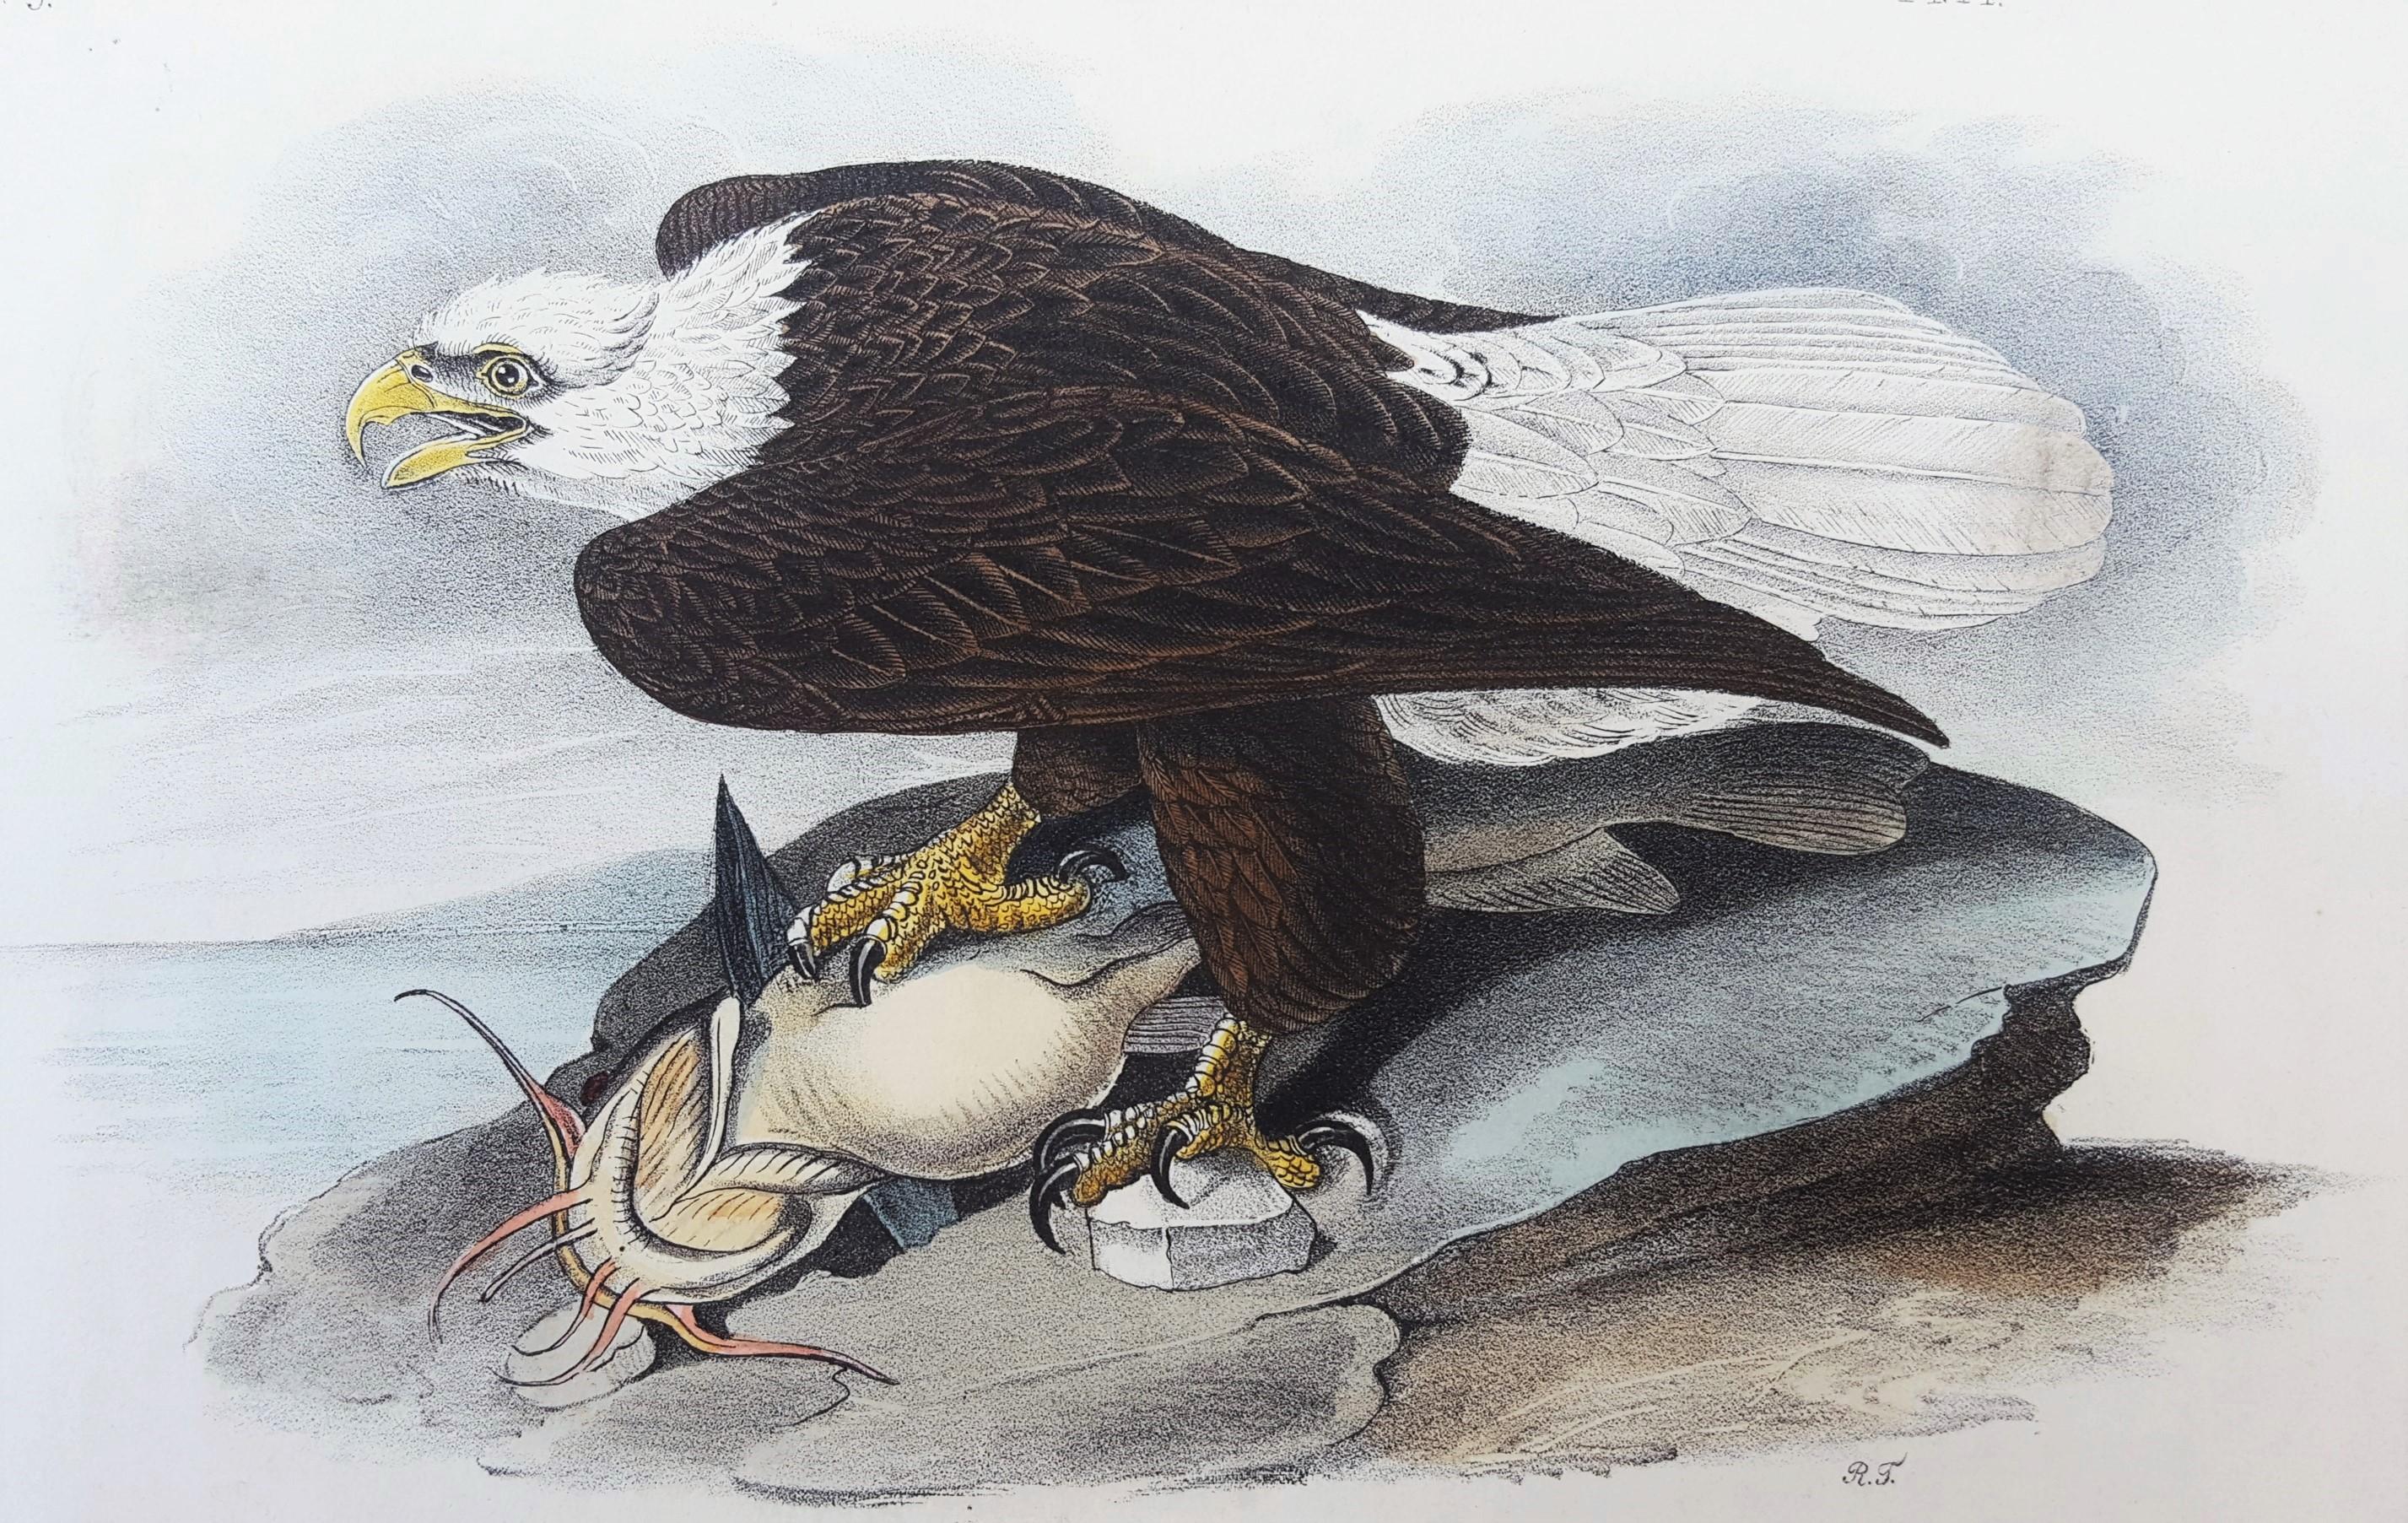 Artistics : John James Audubon (américain, 1785-1851)
Titre : "Aigle de mer à tête blanche, ou aigle à tête blanche (avec poisson-chat)" (planche 14, n° 3)
Portfolio : Les oiseaux d'Amérique, première édition royale octavo
Année : 1840-1844
Support